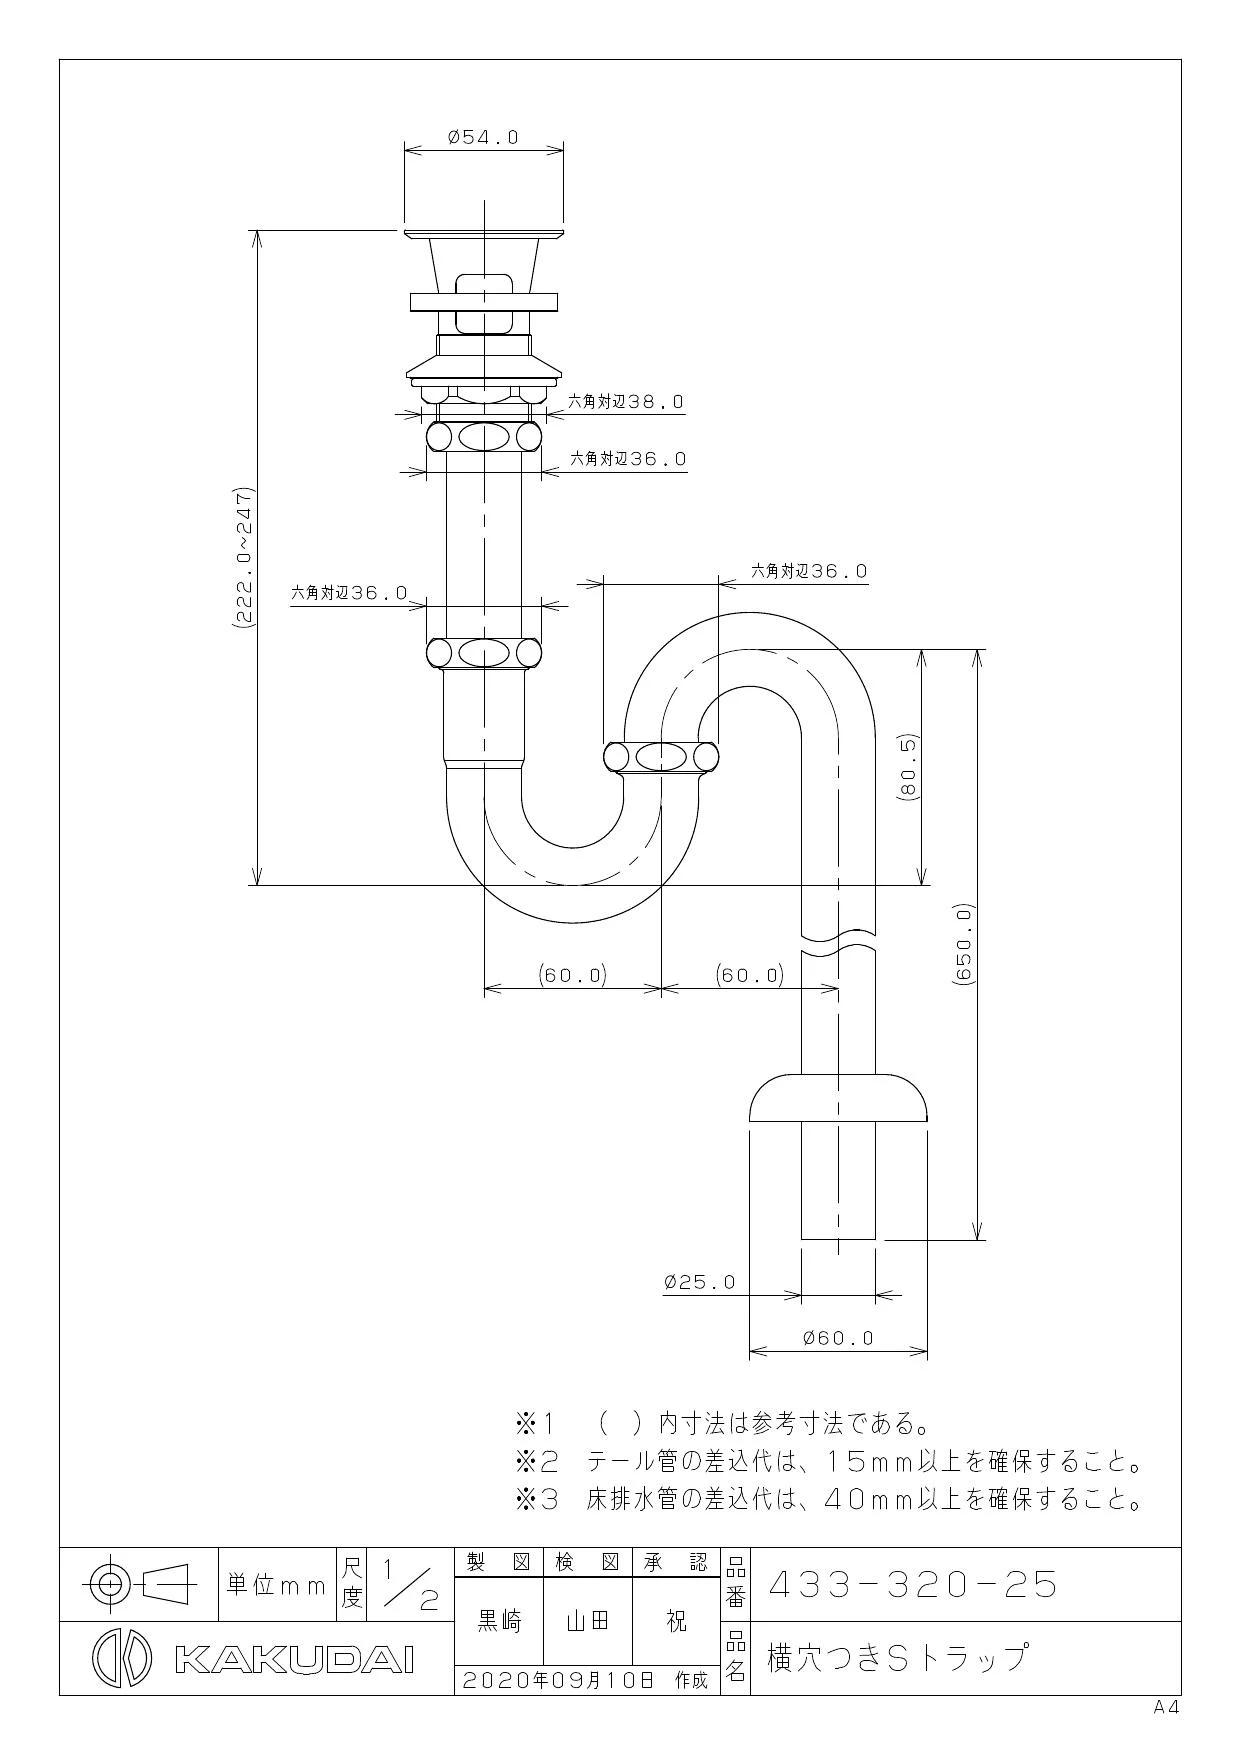 433-320-25 商品図面|カクダイ 排水管セットの通販はプロストア ダイレクト